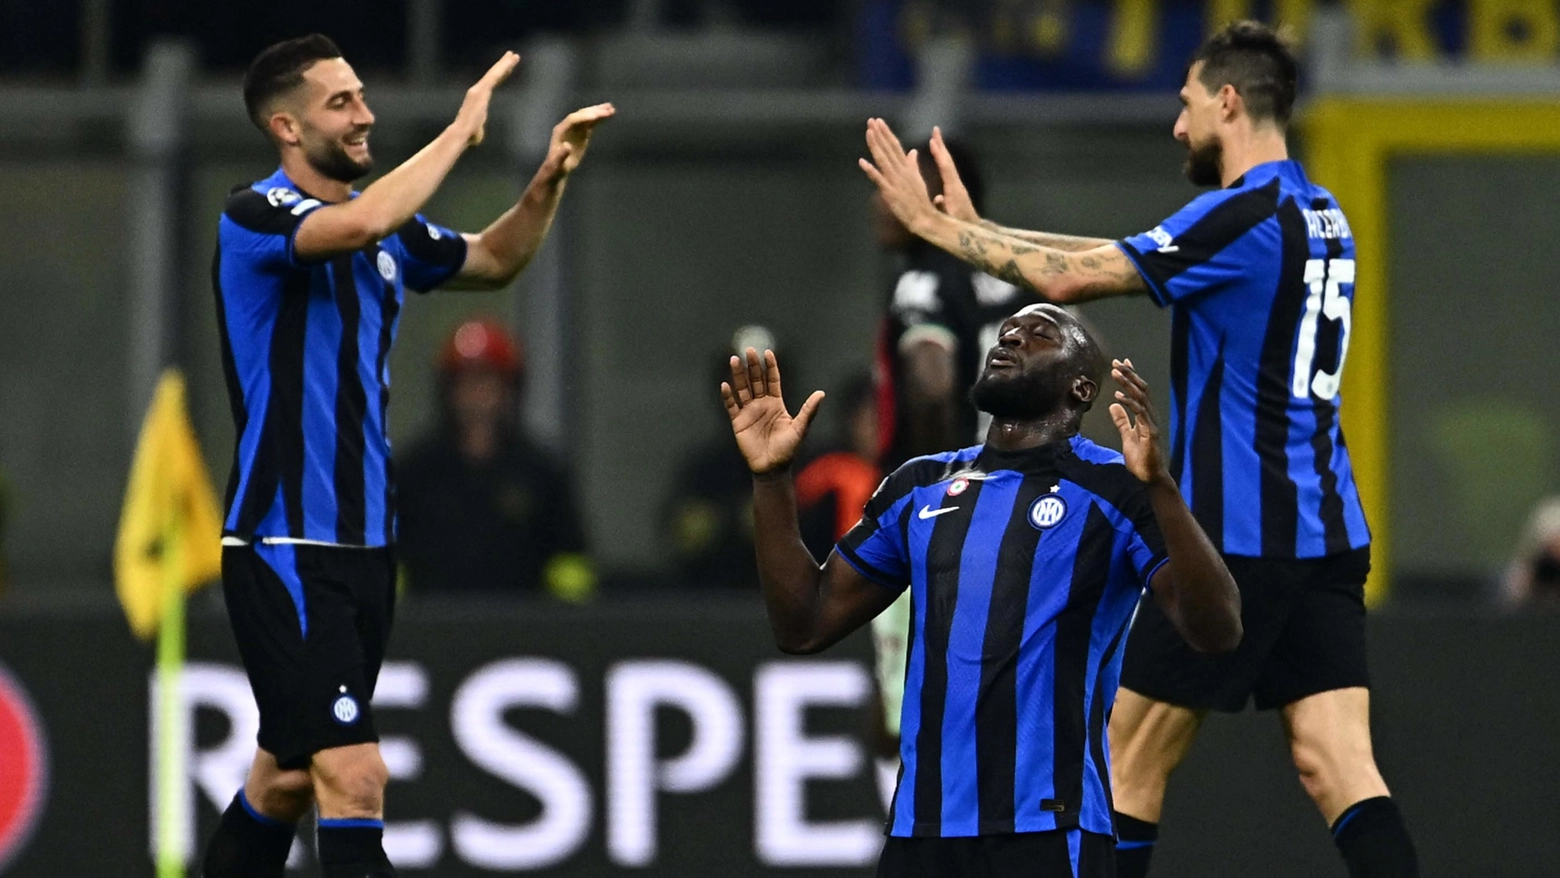 Le pagelle dell’Inter: Calha vero leader, Micky sfortunato, Acerbi alza il muro